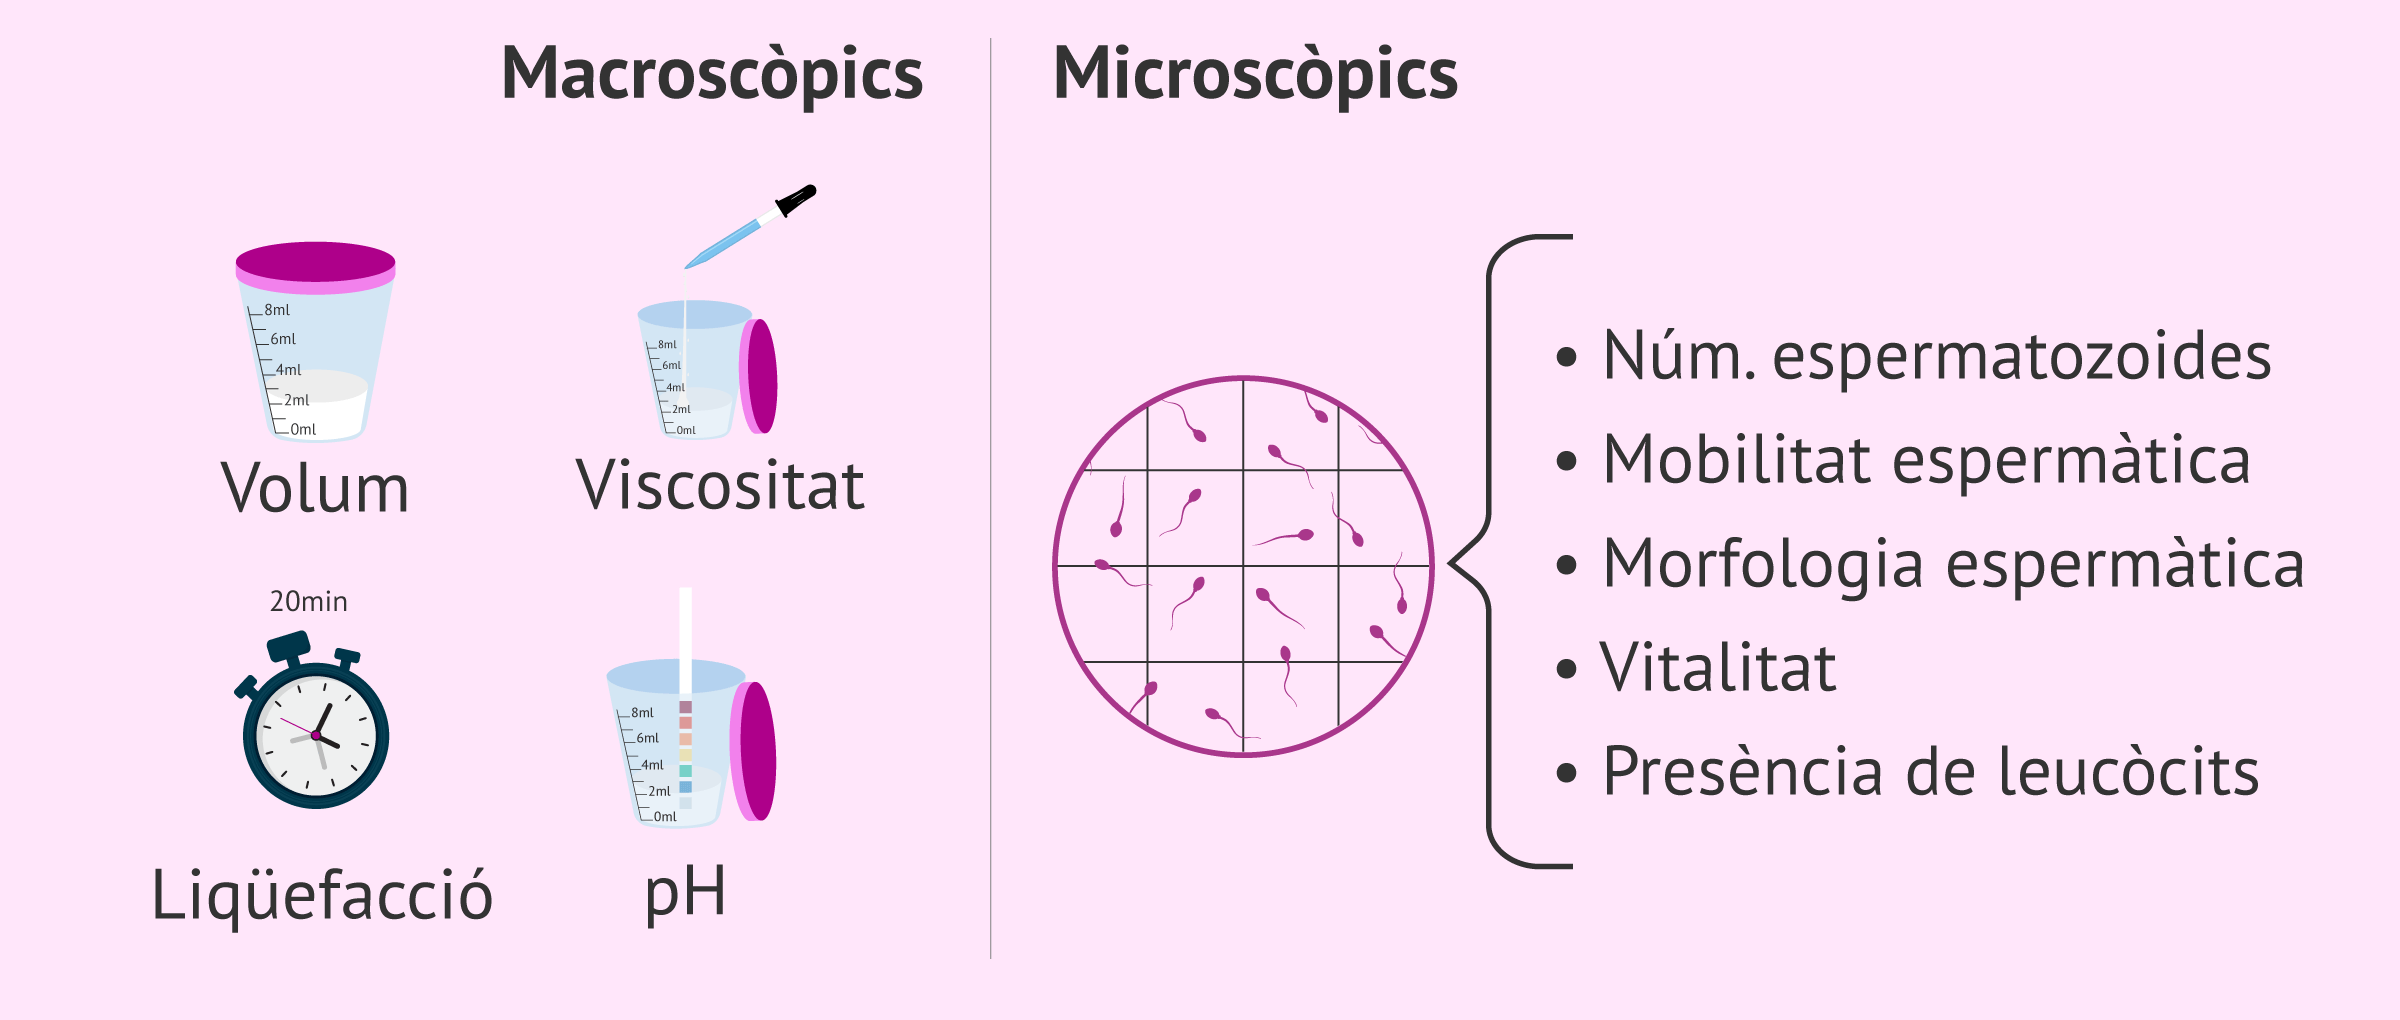 Seminograma bàsic amb els paràmetres macroscòpics i microscòpics